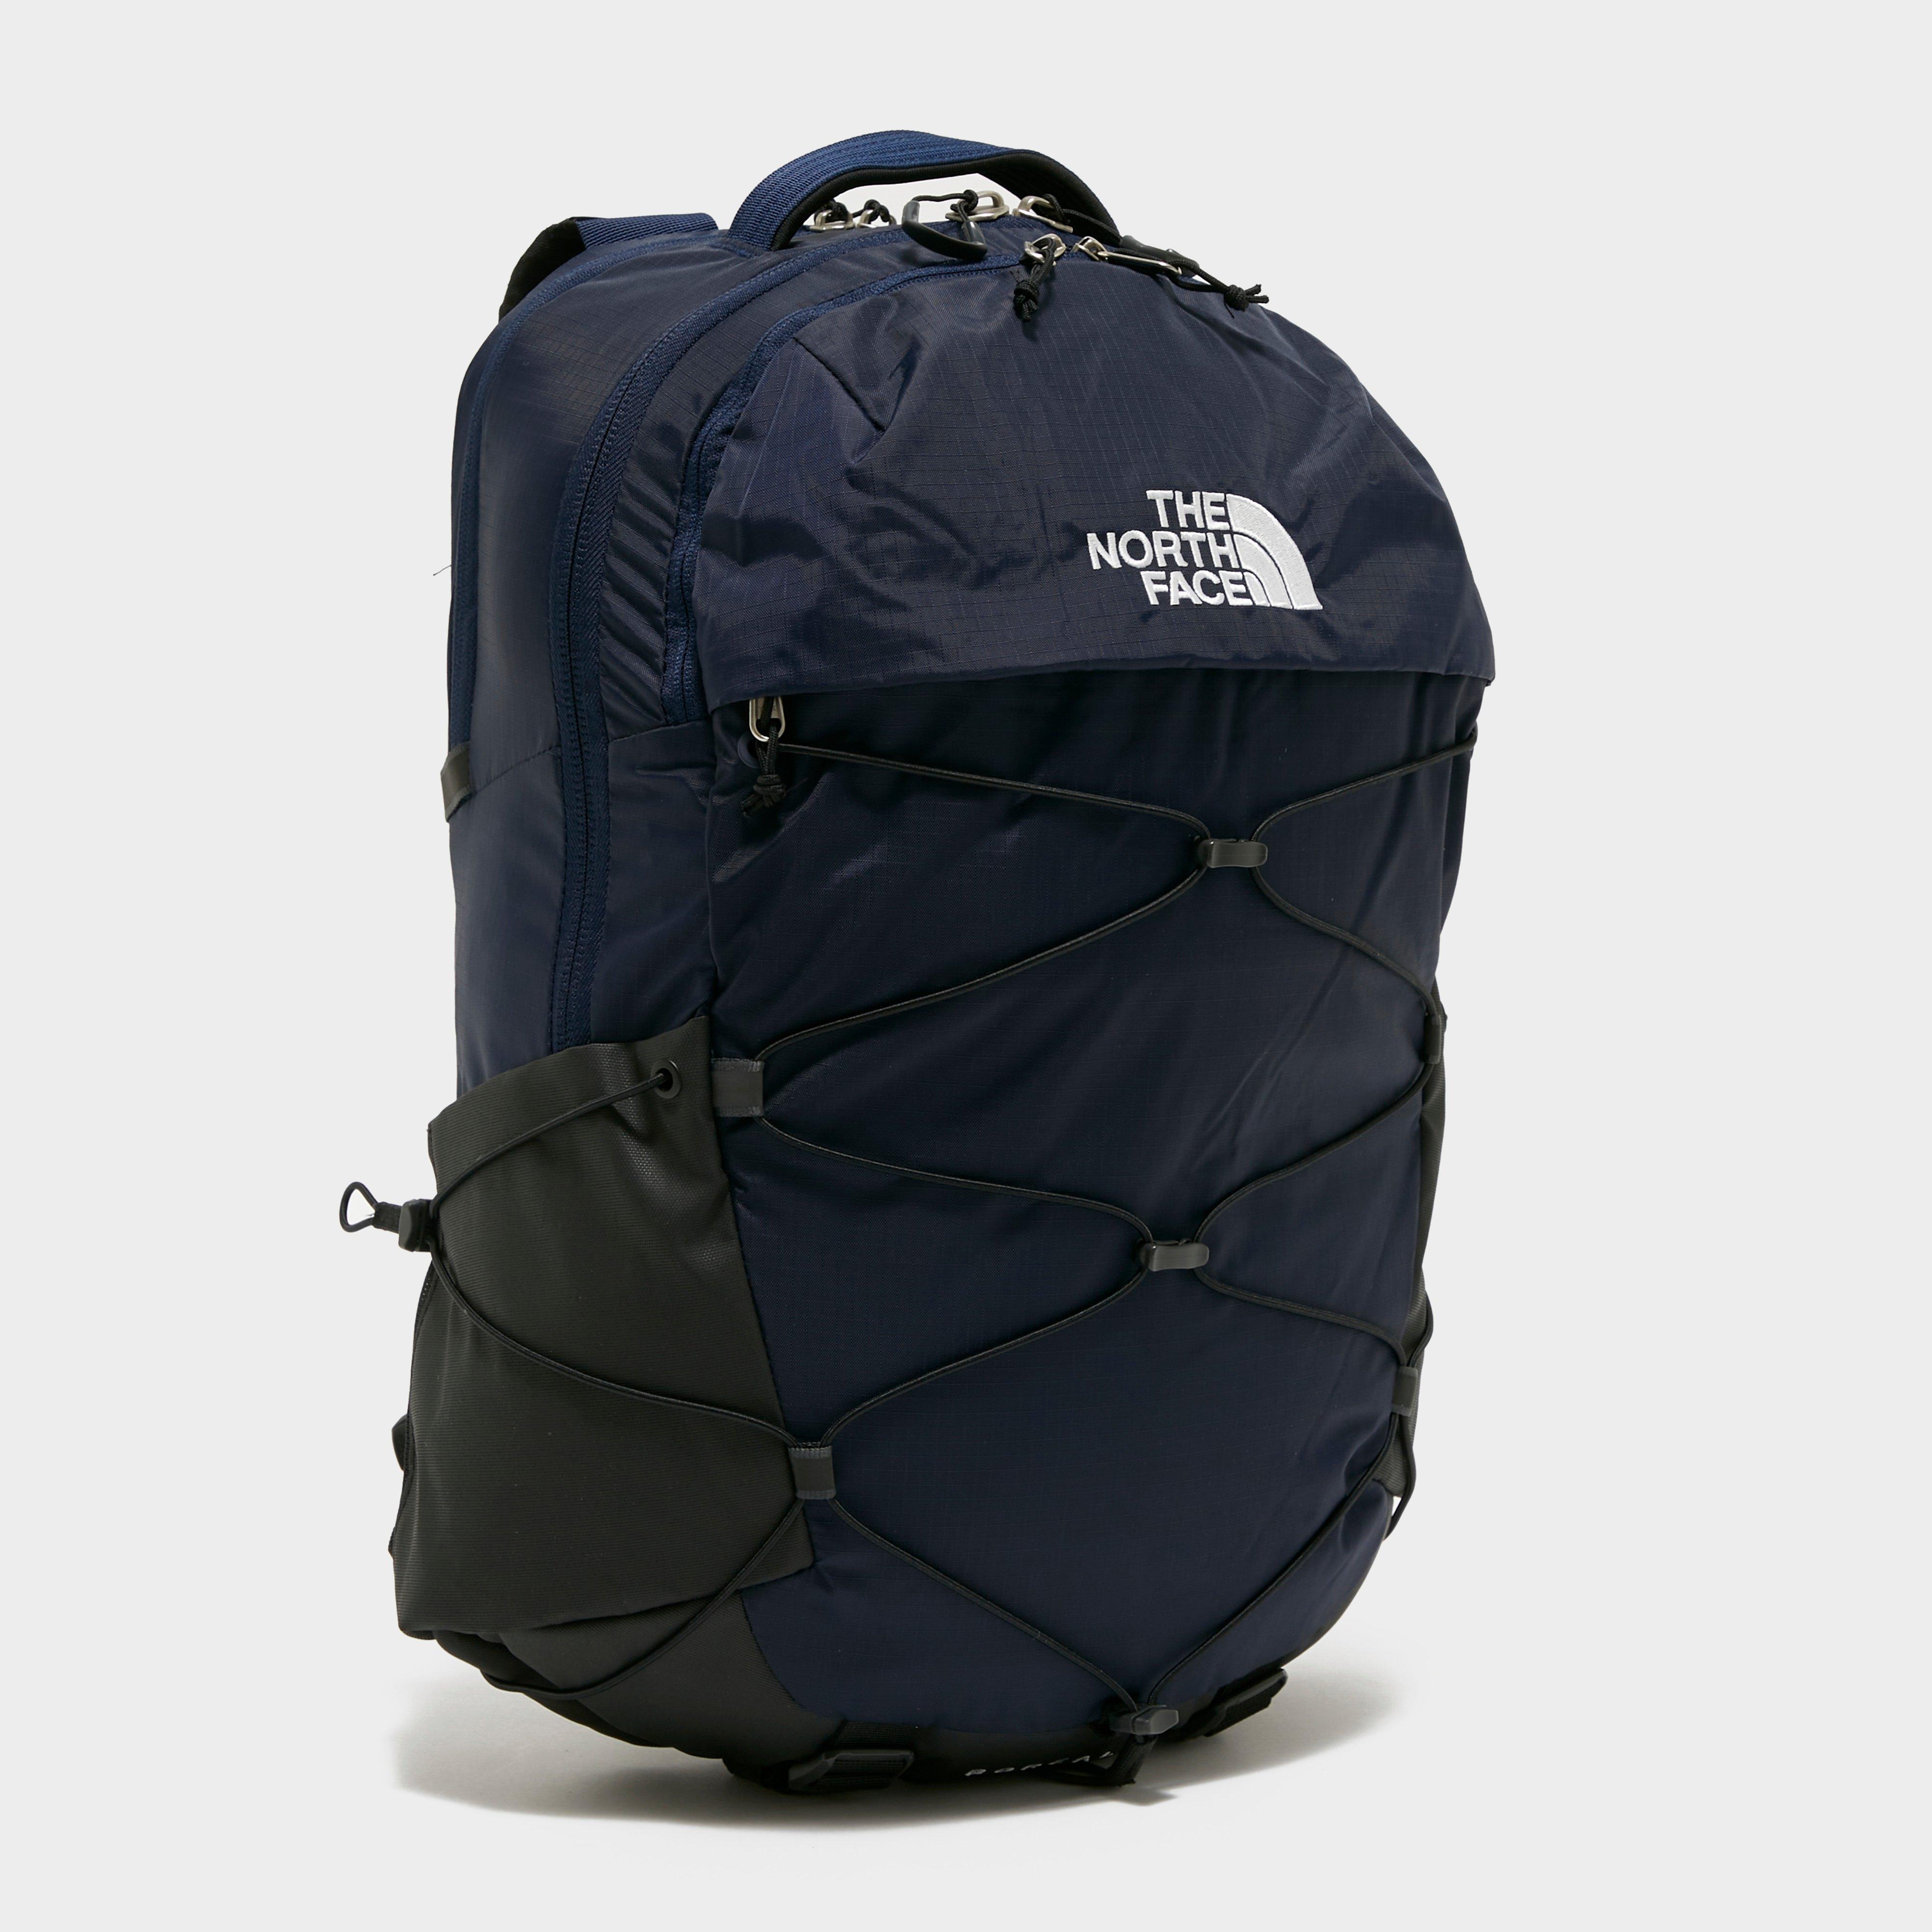 The North Face Borealis Backpack - Navy/grey  Navy/grey